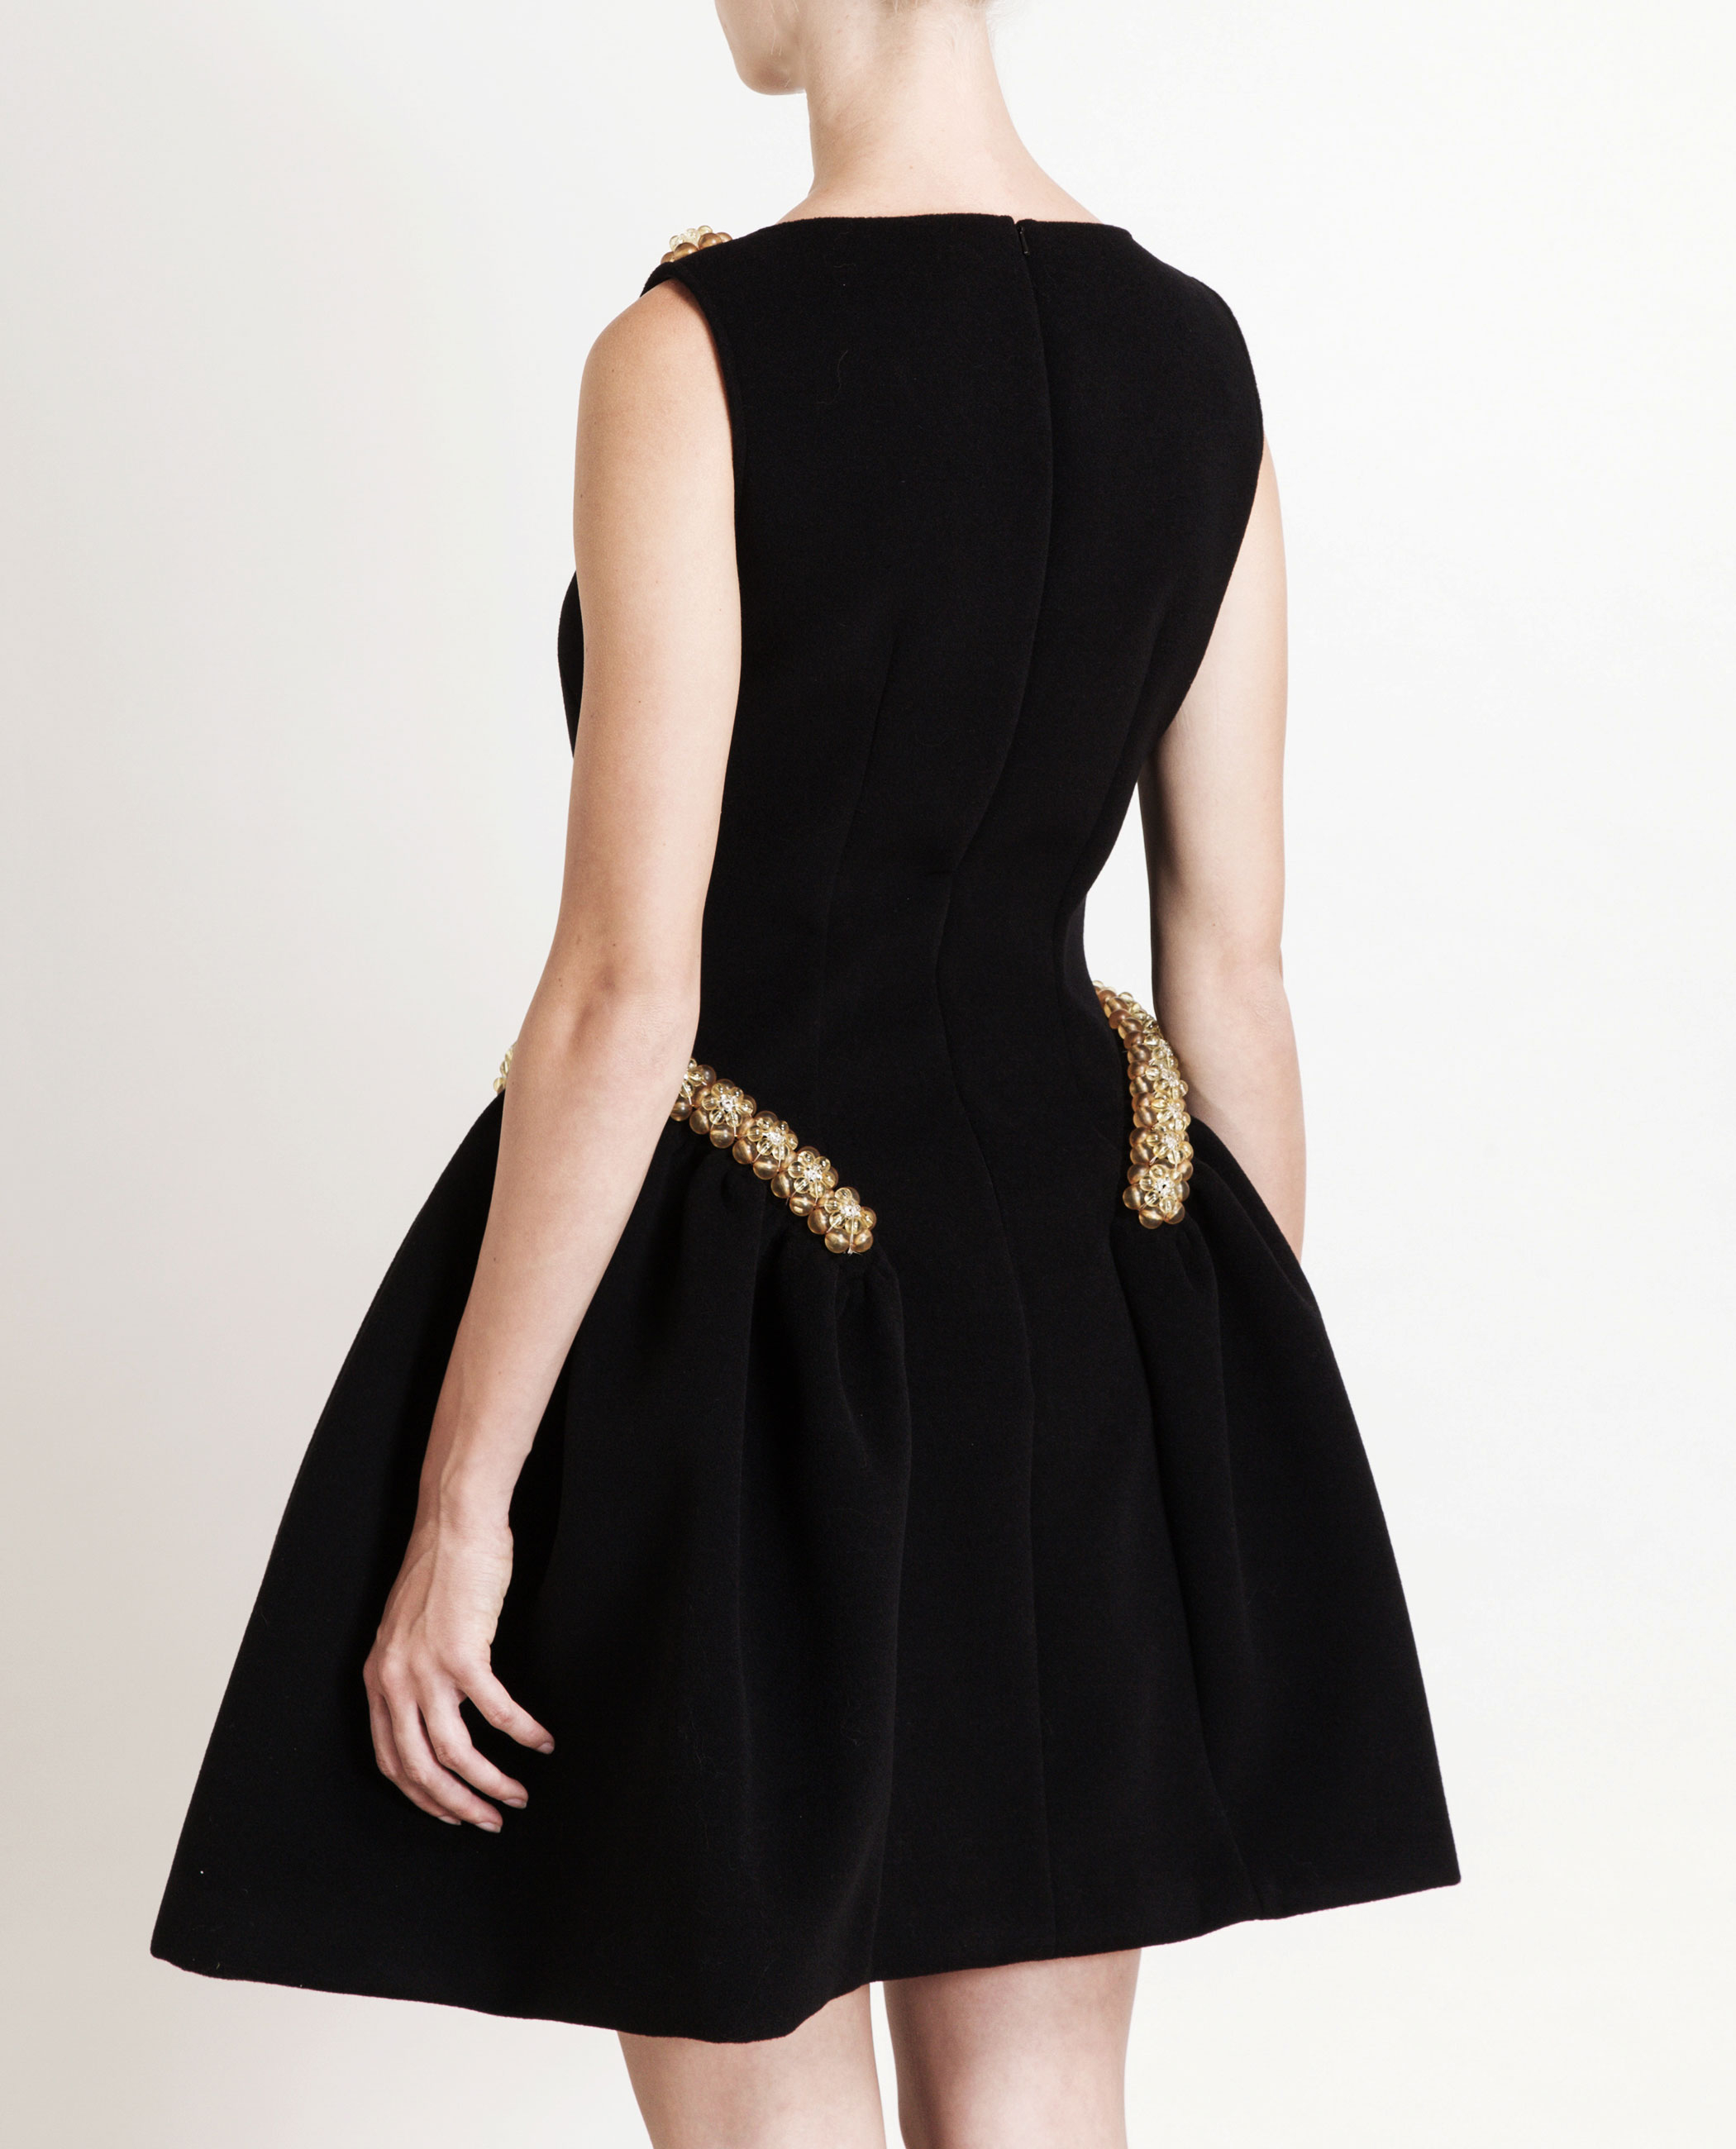 embellished black dress